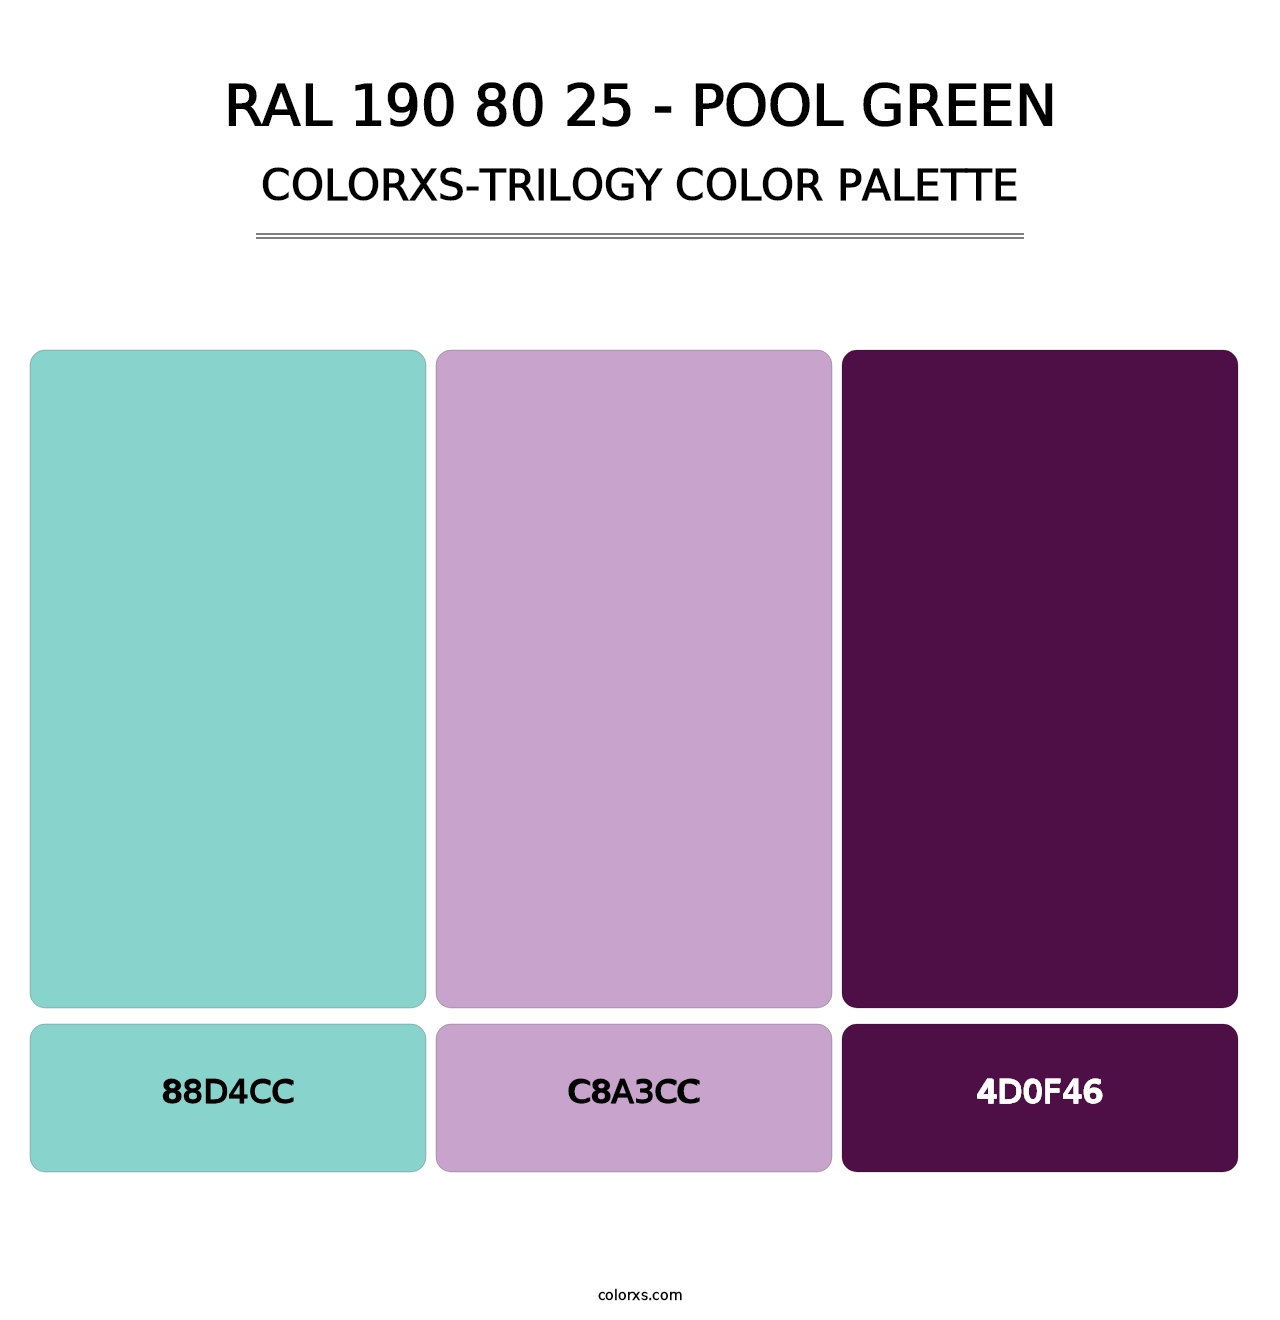 RAL 190 80 25 - Pool Green - Colorxs Trilogy Palette